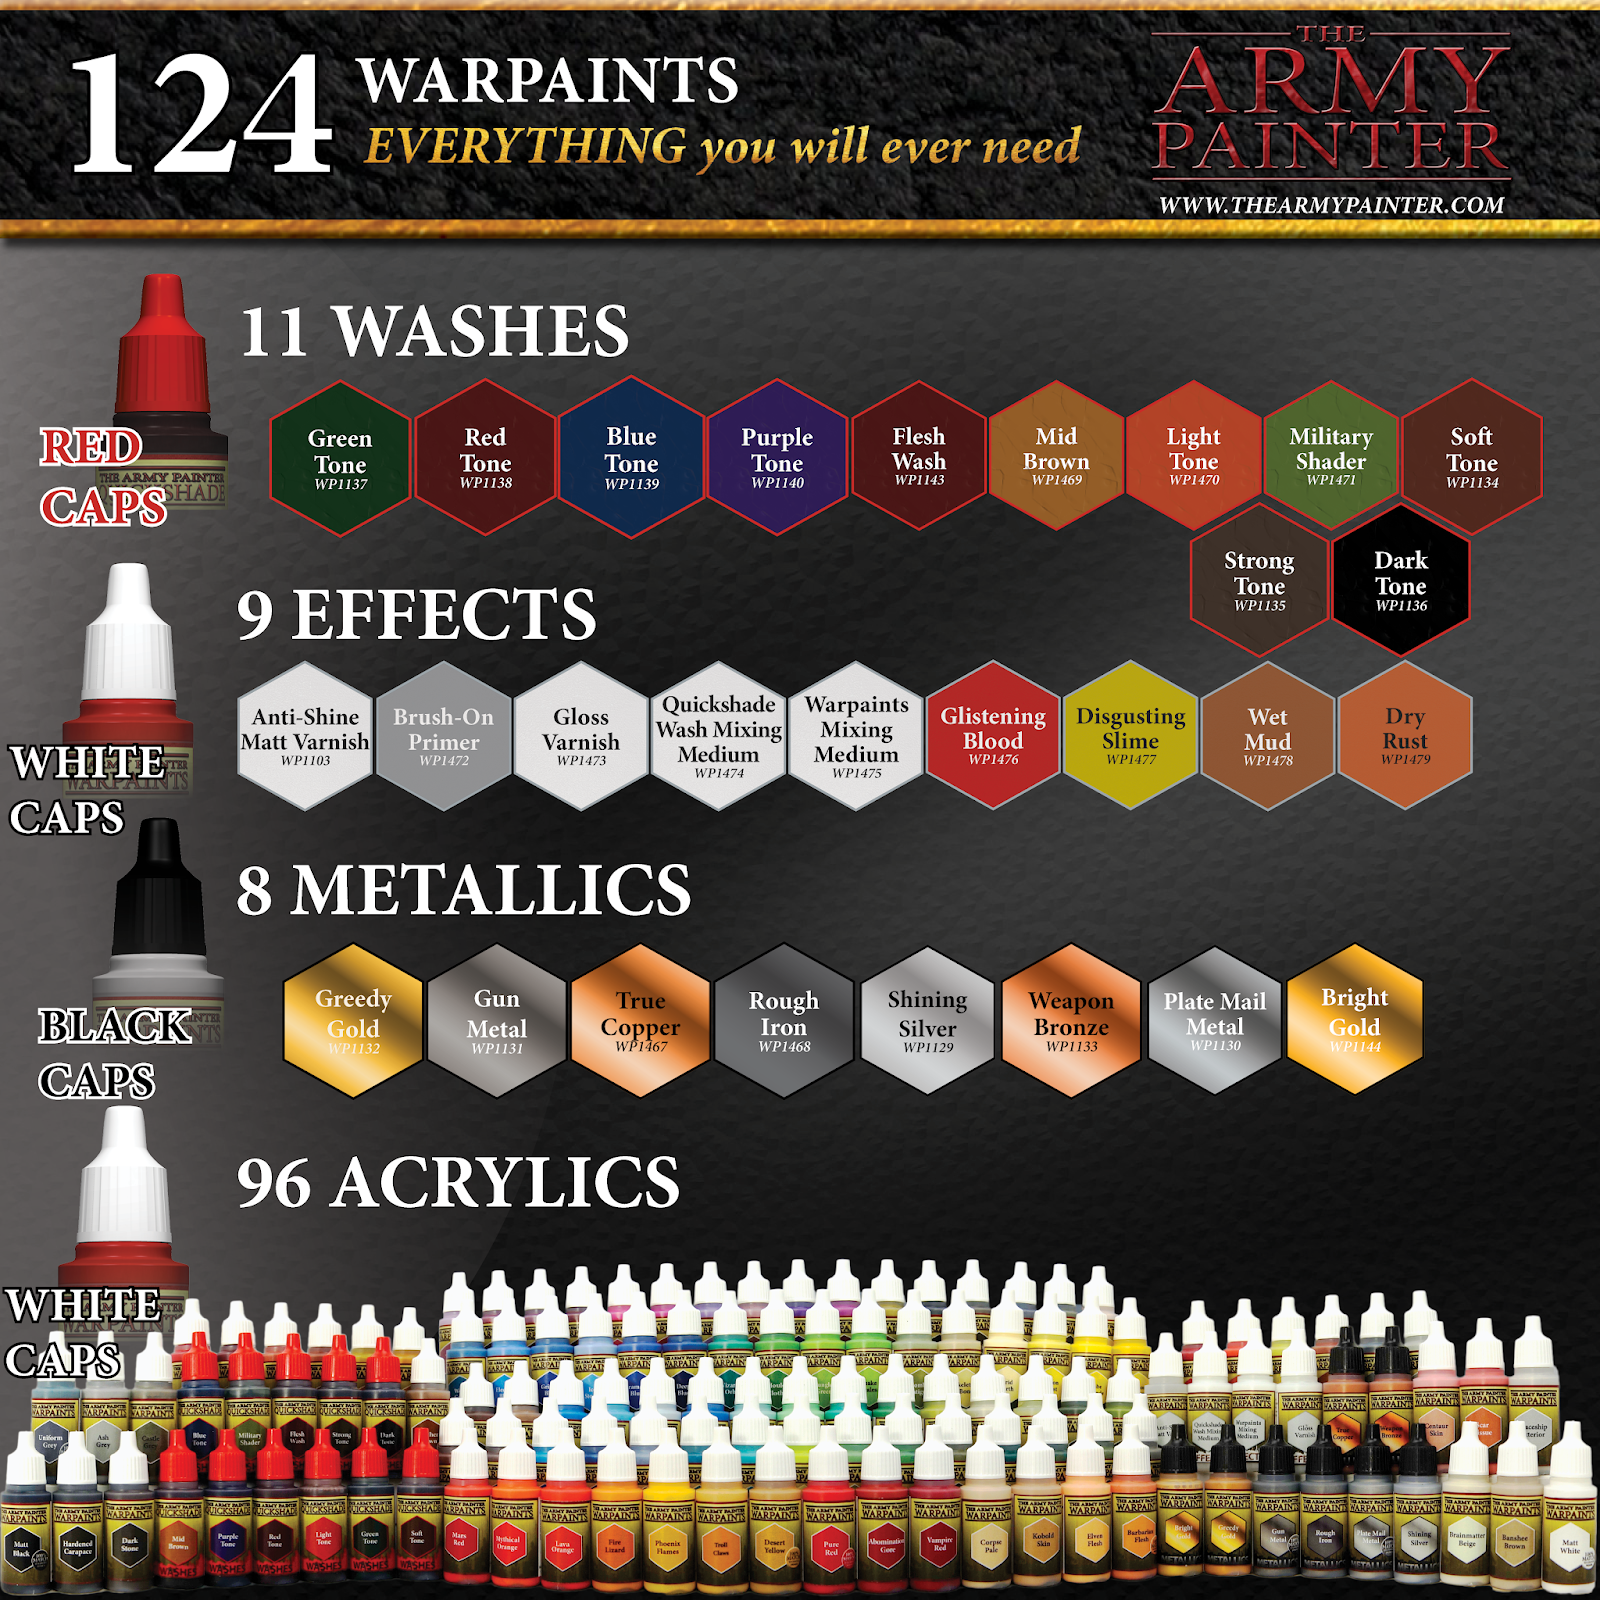 Army Painter Army Painter Army Painter Primer - Gunmetal (2022